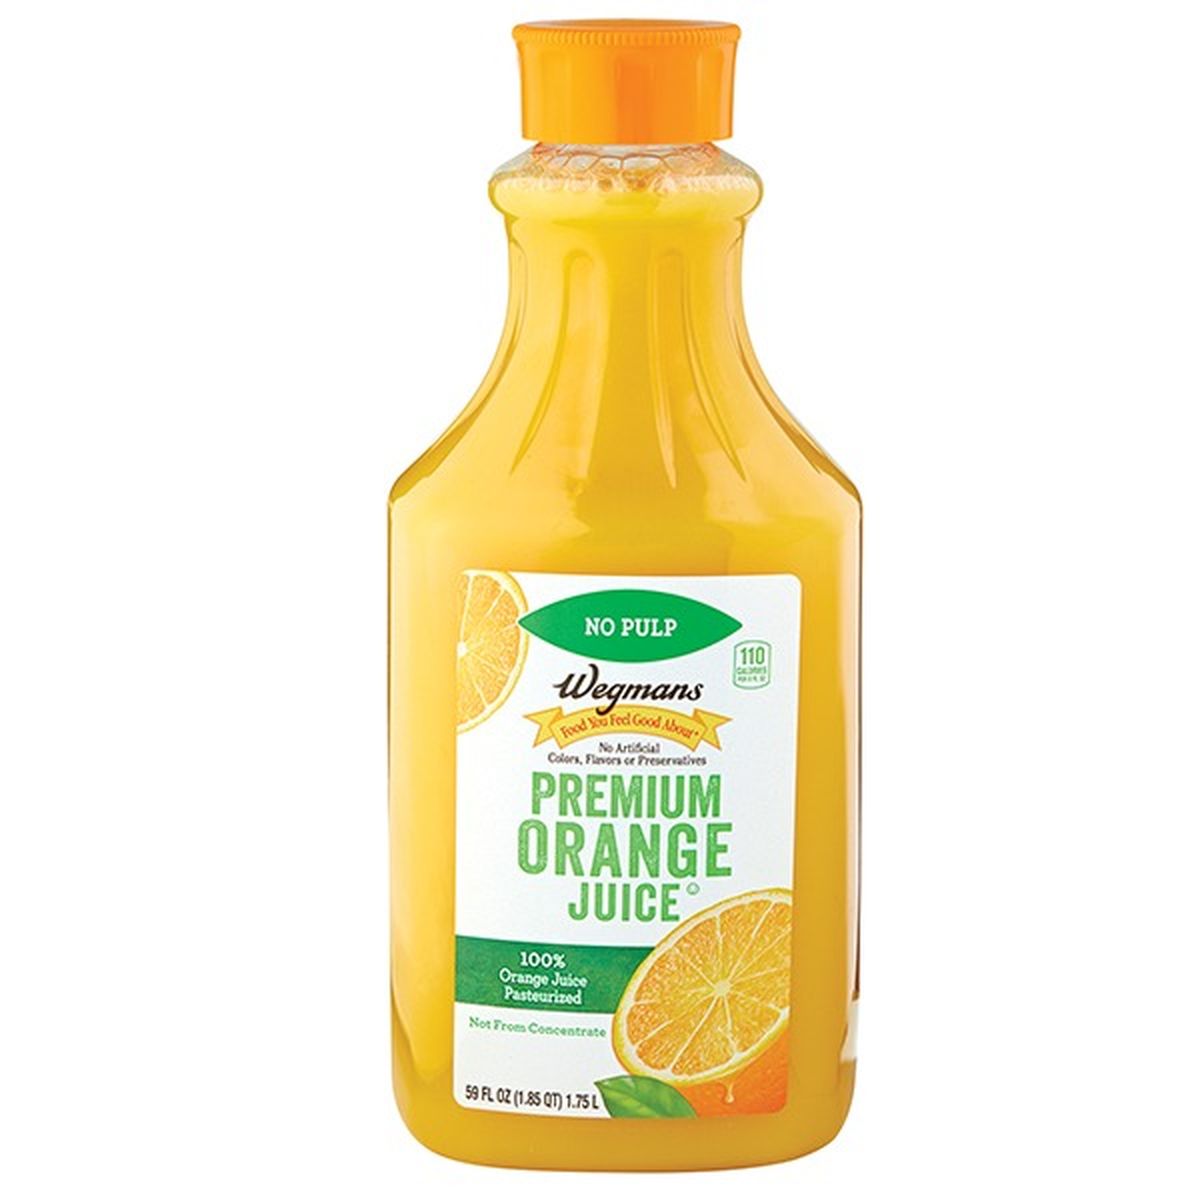 Calories in Wegmans Premium Orange Juice, No Pulp